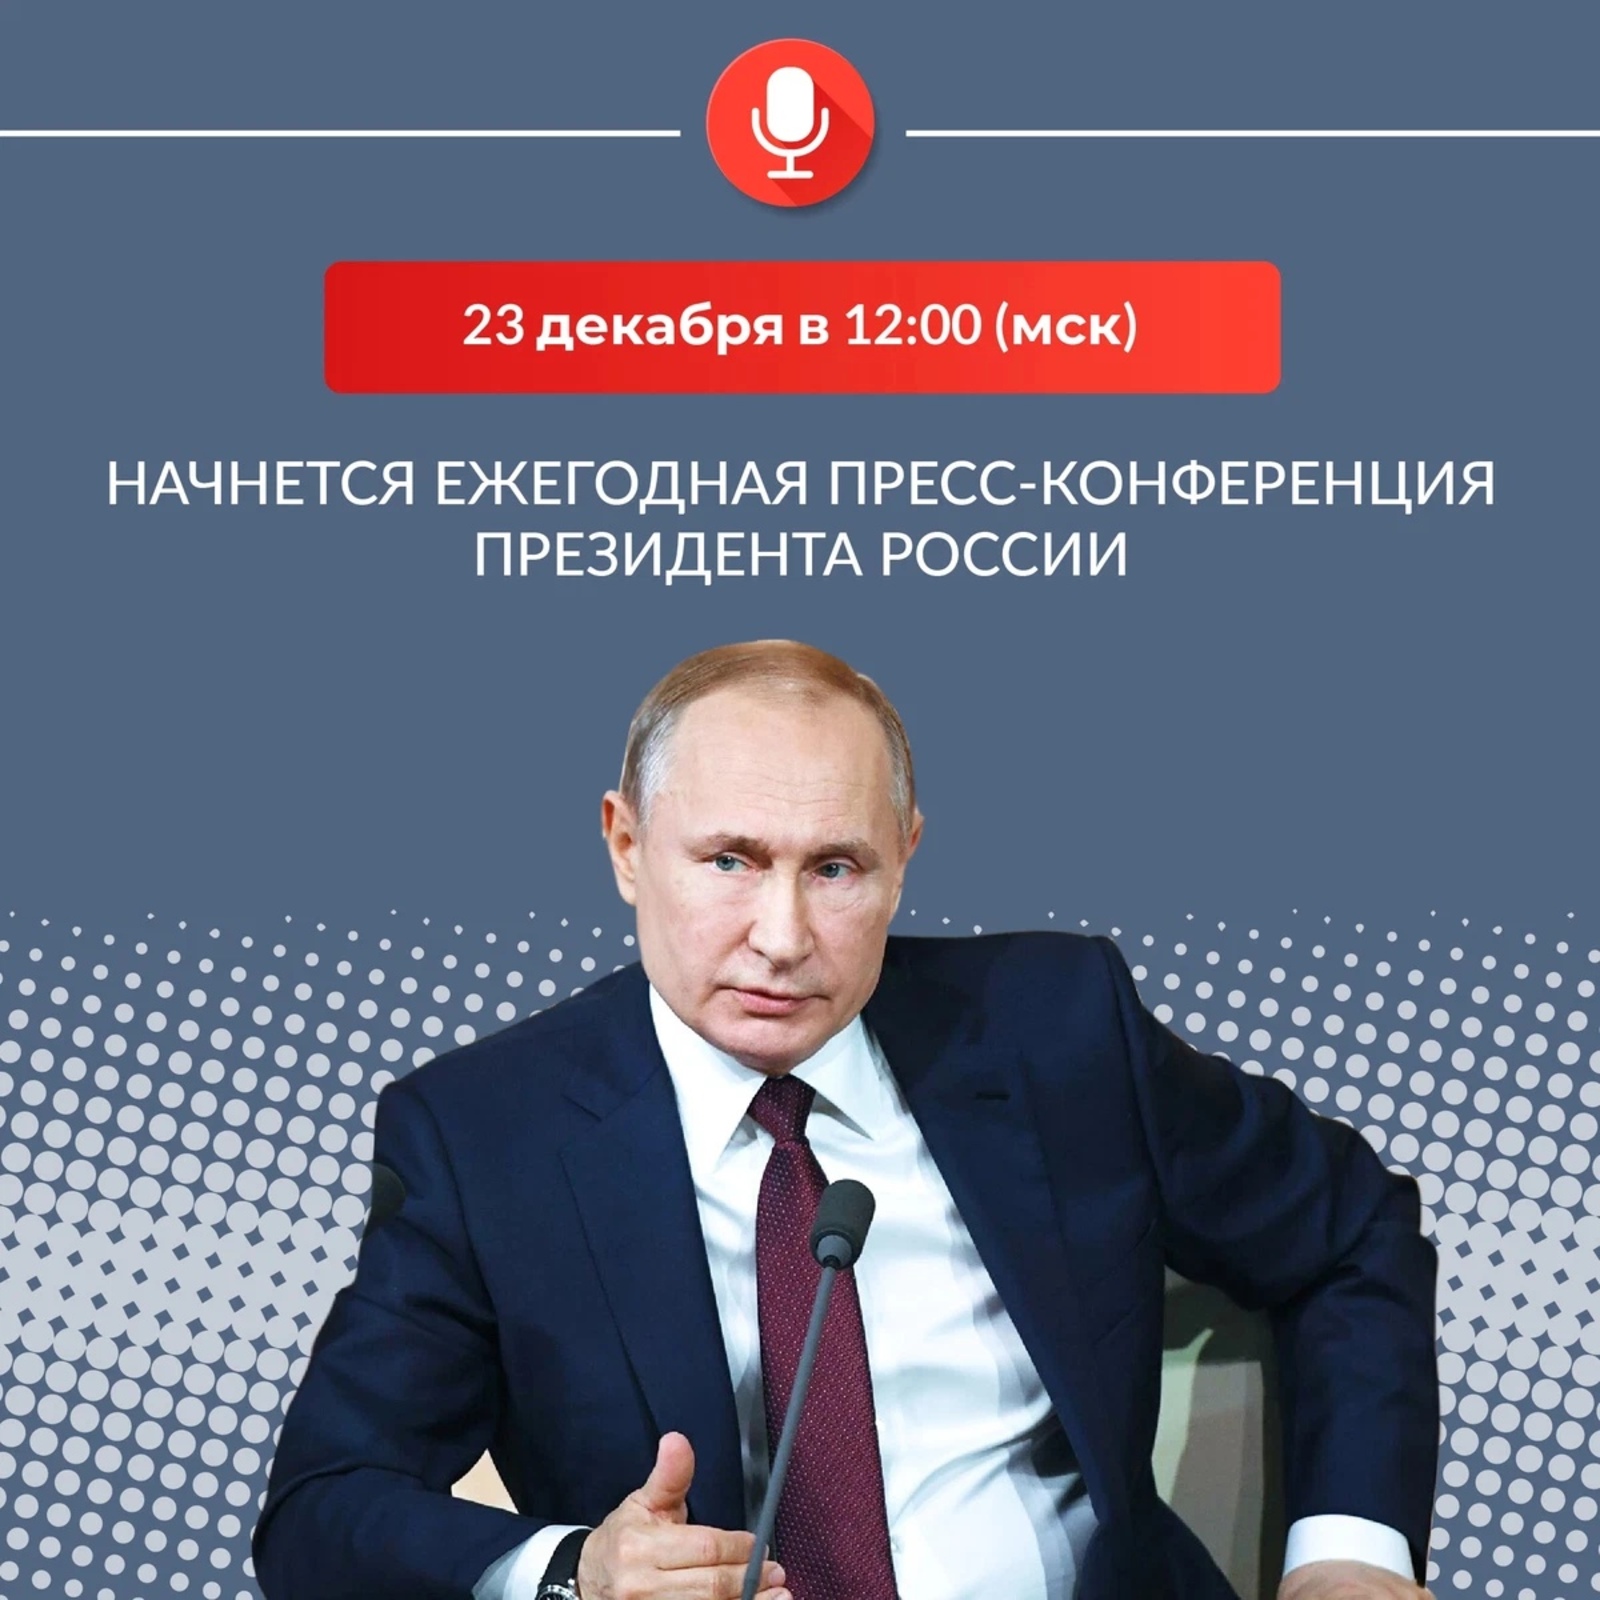 Владимир Путиндың матбуғат конференцияһы үтә